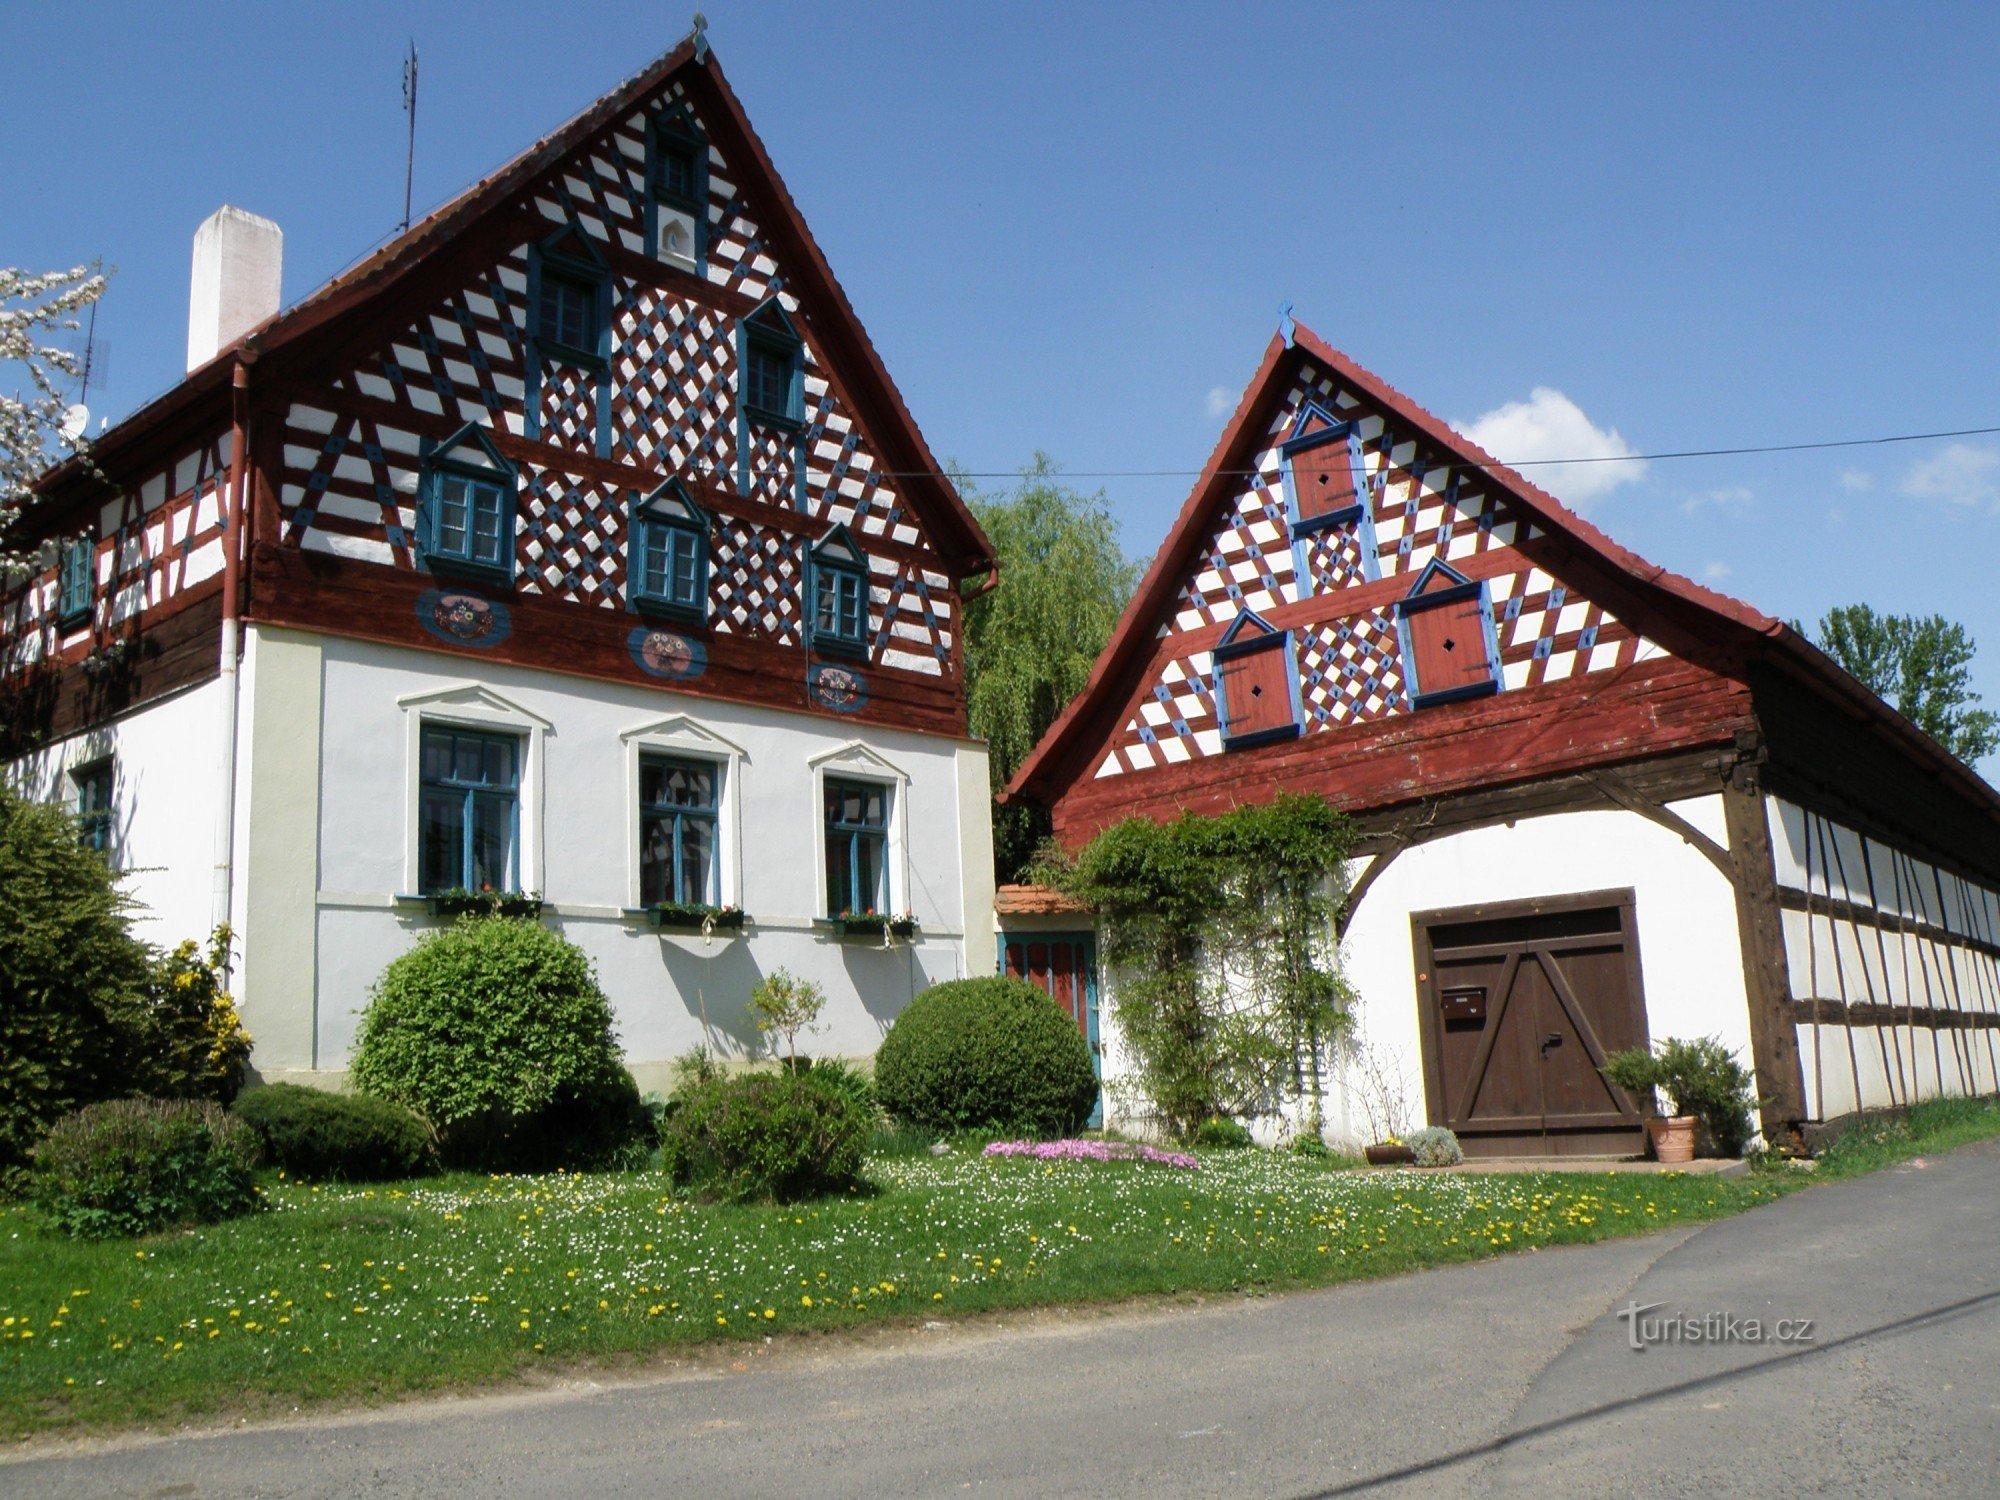 野外博物館 Doubrava